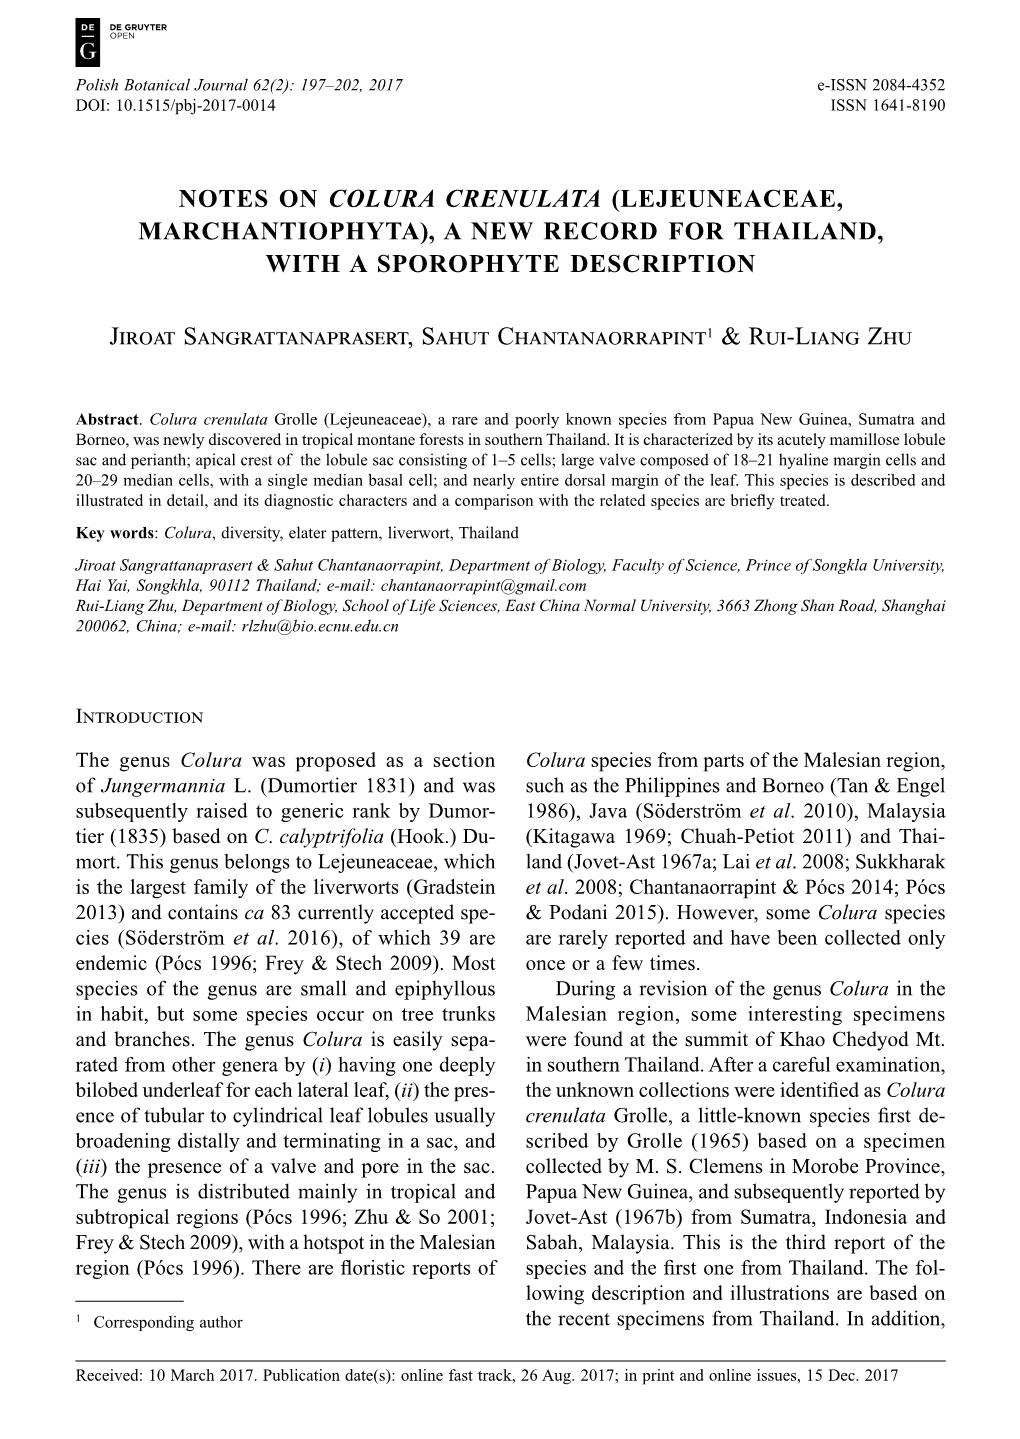 Notes on Colura Crenulata (Lejeuneaceae, Marchantiophyta), a New Record for Thailand, with a Sporophyte Description